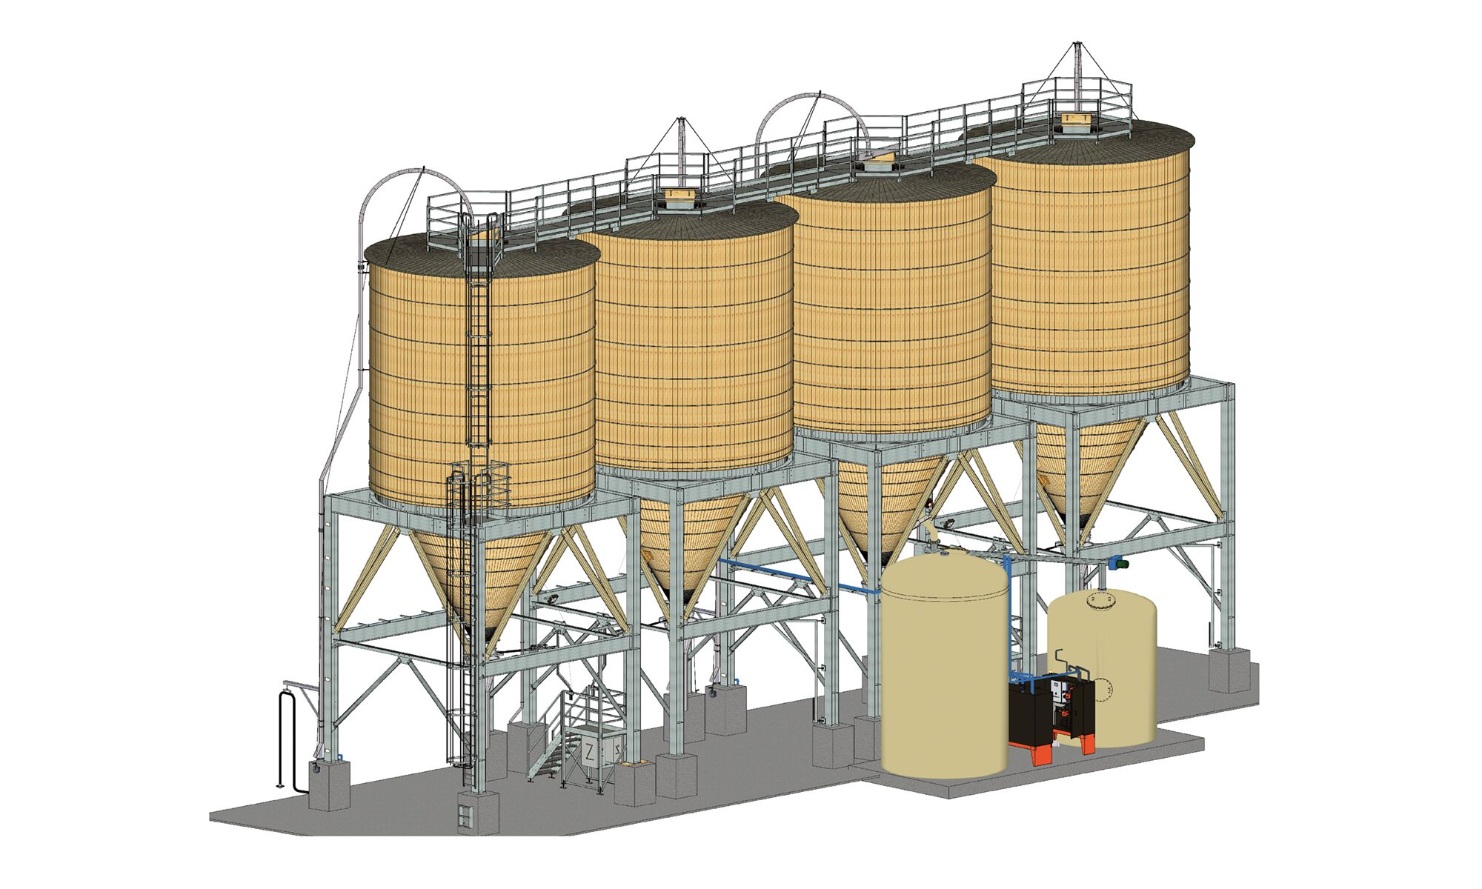 Large silos for salt storage by Blumer Lehmann